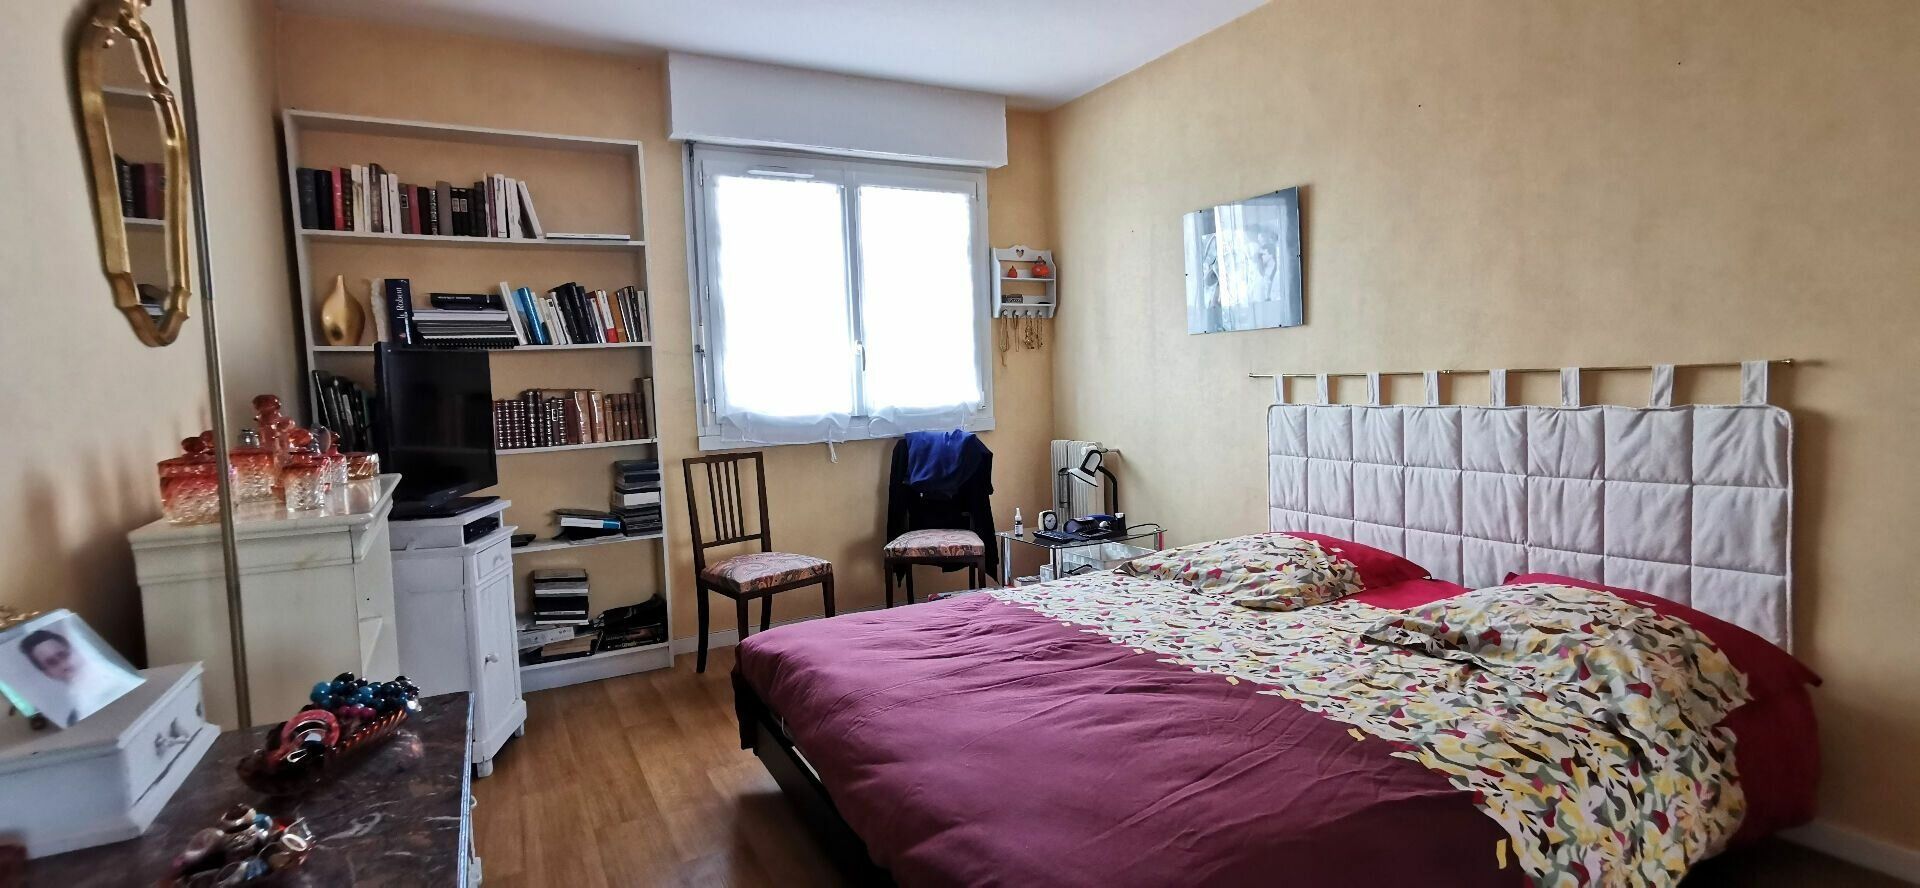 Appartement à vendre 3 88m2 à Amiens vignette-2